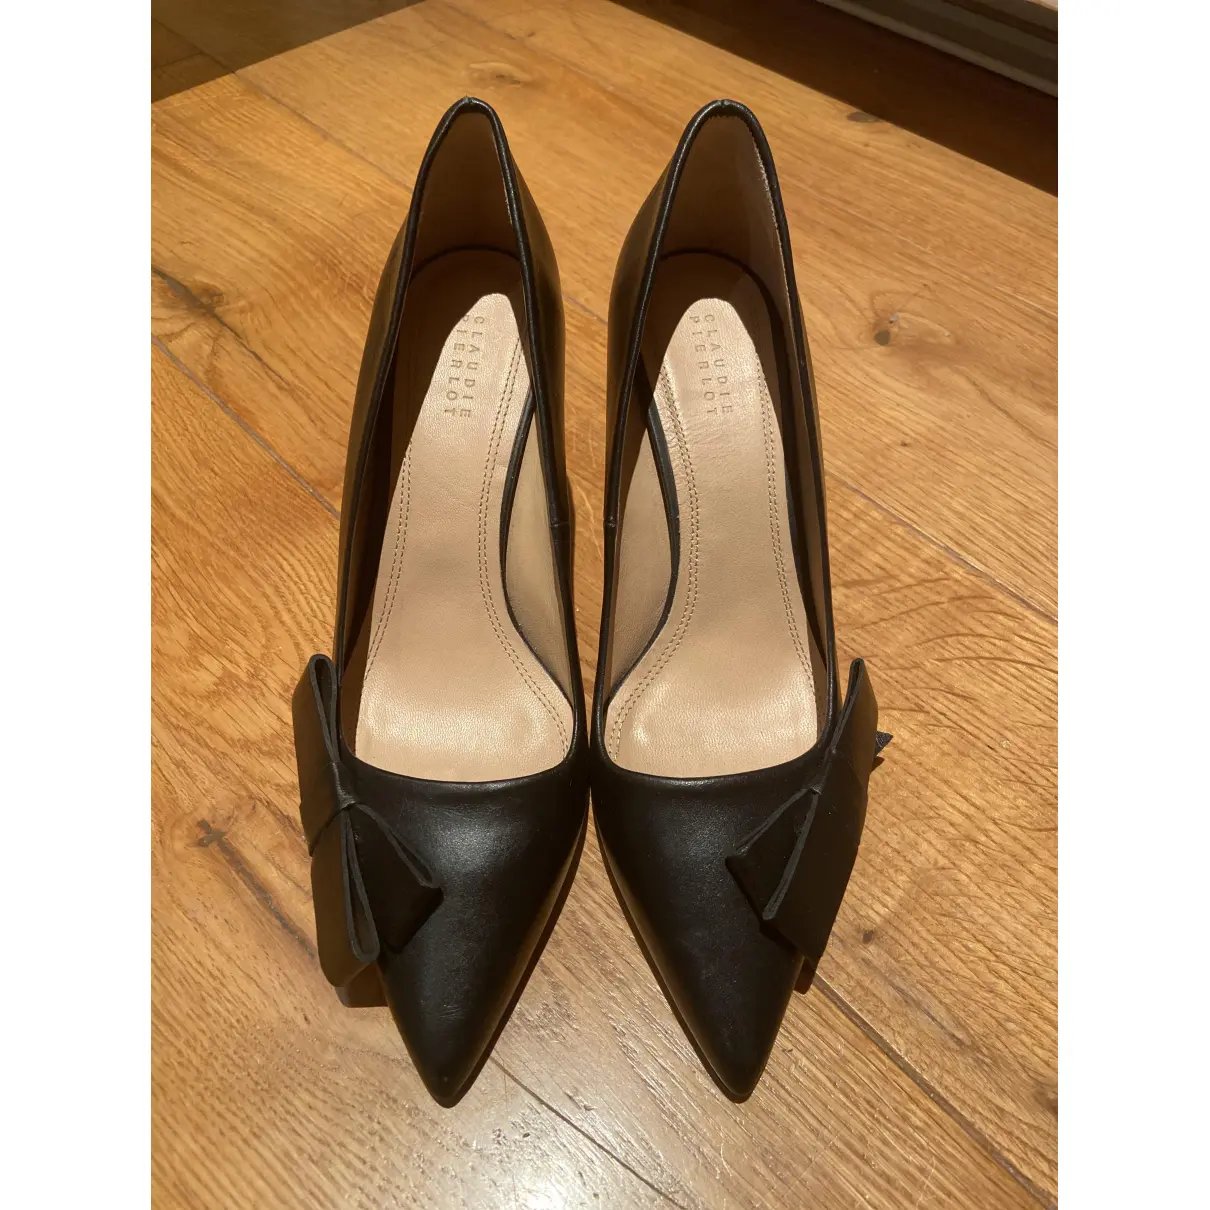 Buy Claudie Pierlot Spring Summer 2019 leather heels online